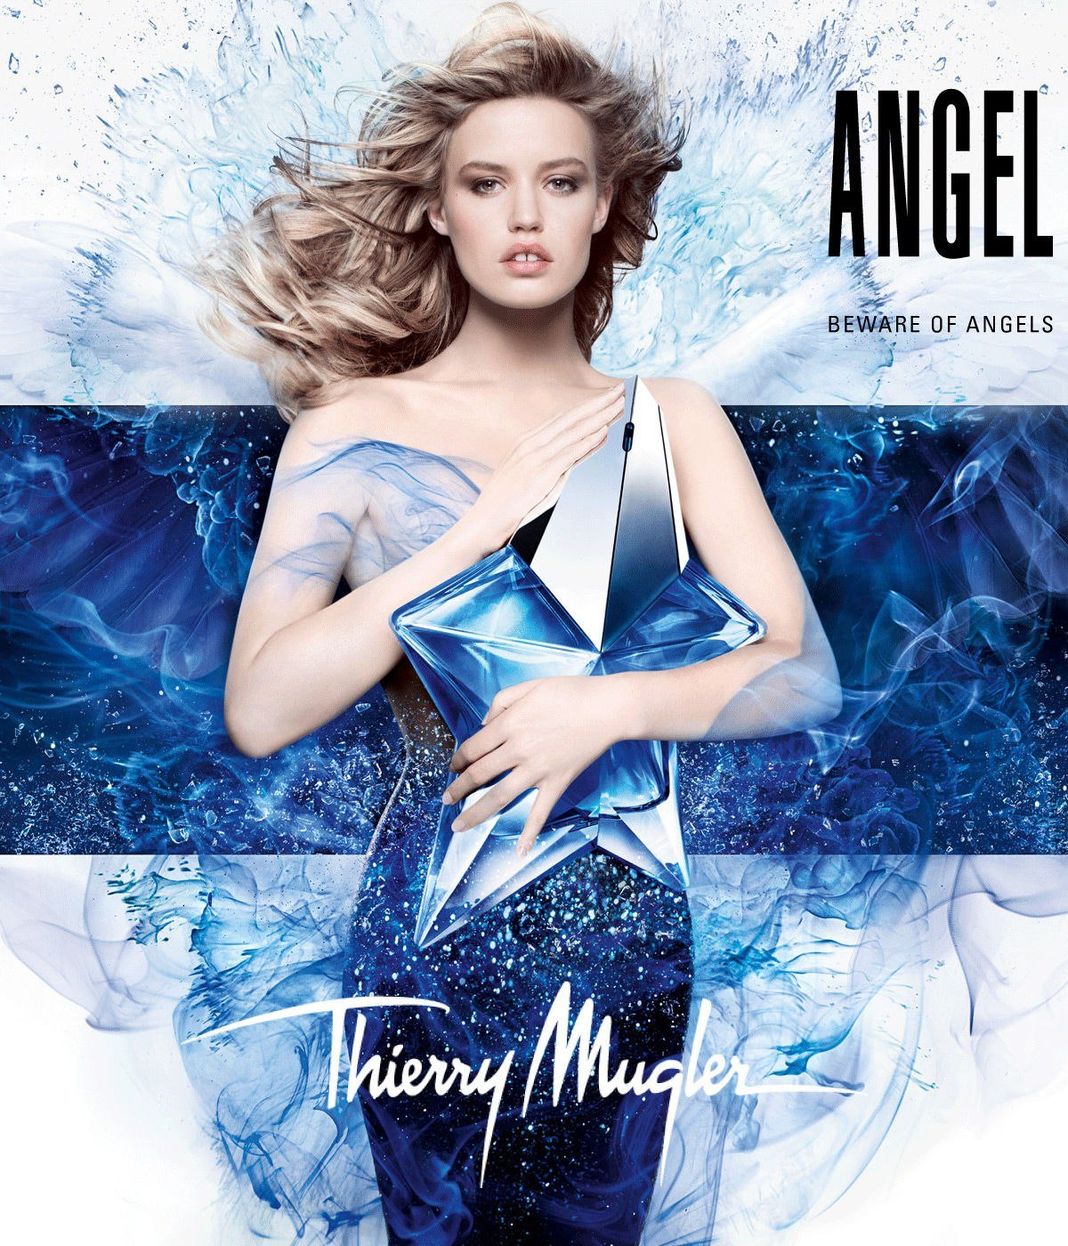 Джорджия Мэй Джаггер в рекламной кампании аромата Angel Mugler